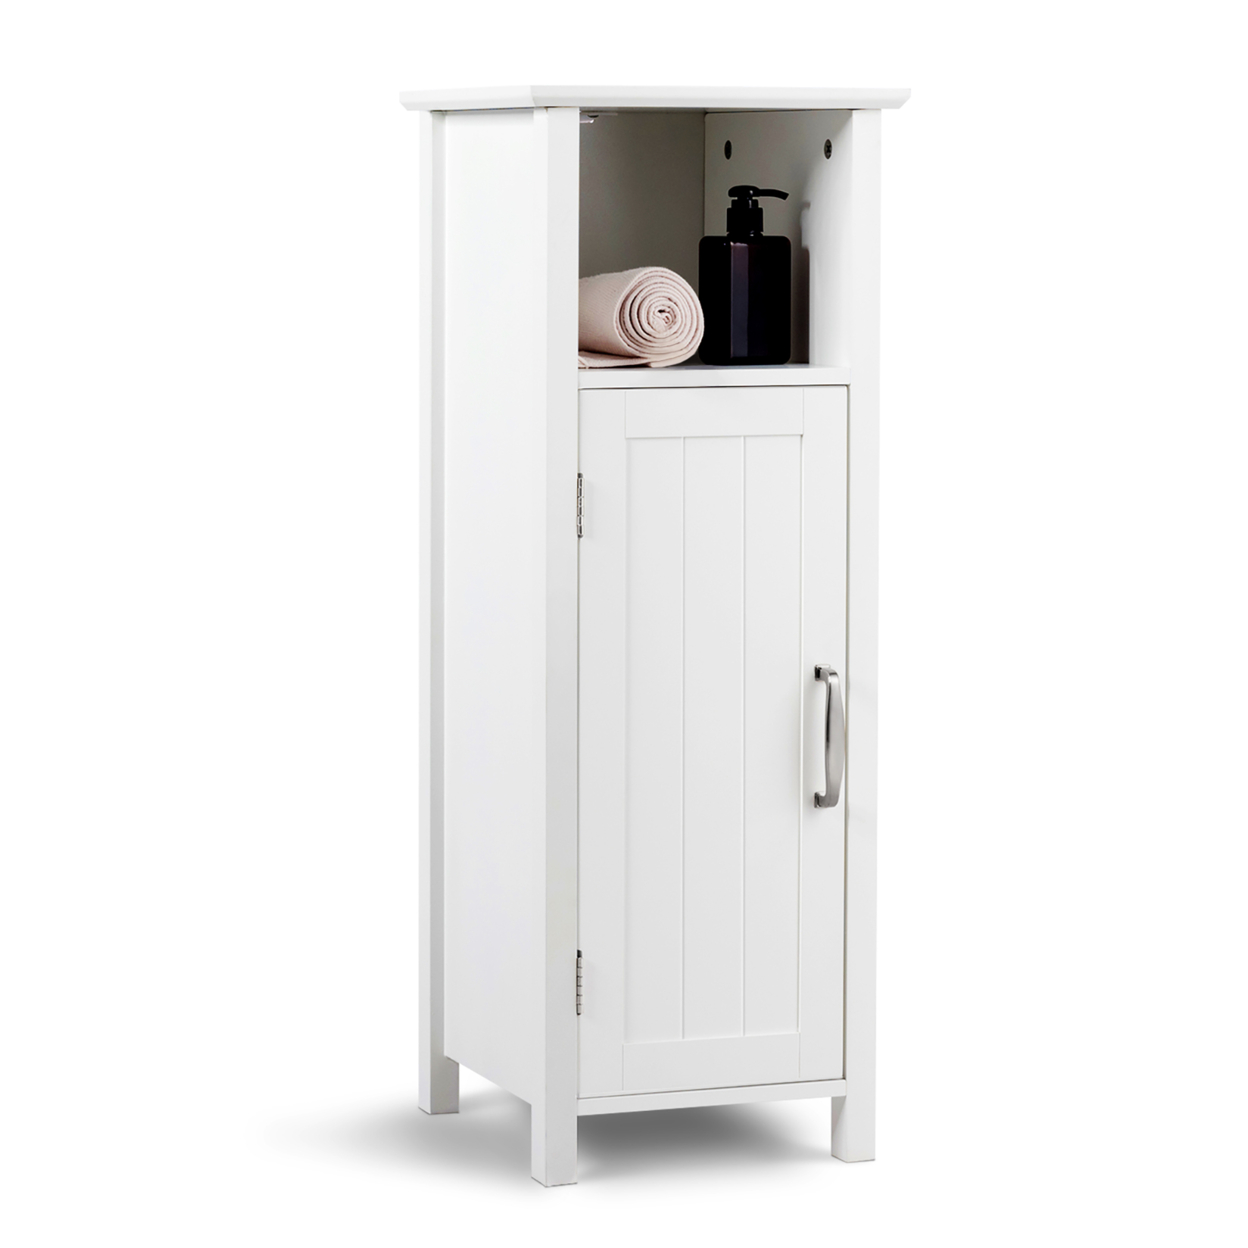 Bathroom Floor Storage Cabinet Free Standing W/ Single Door Adjustable Shelf